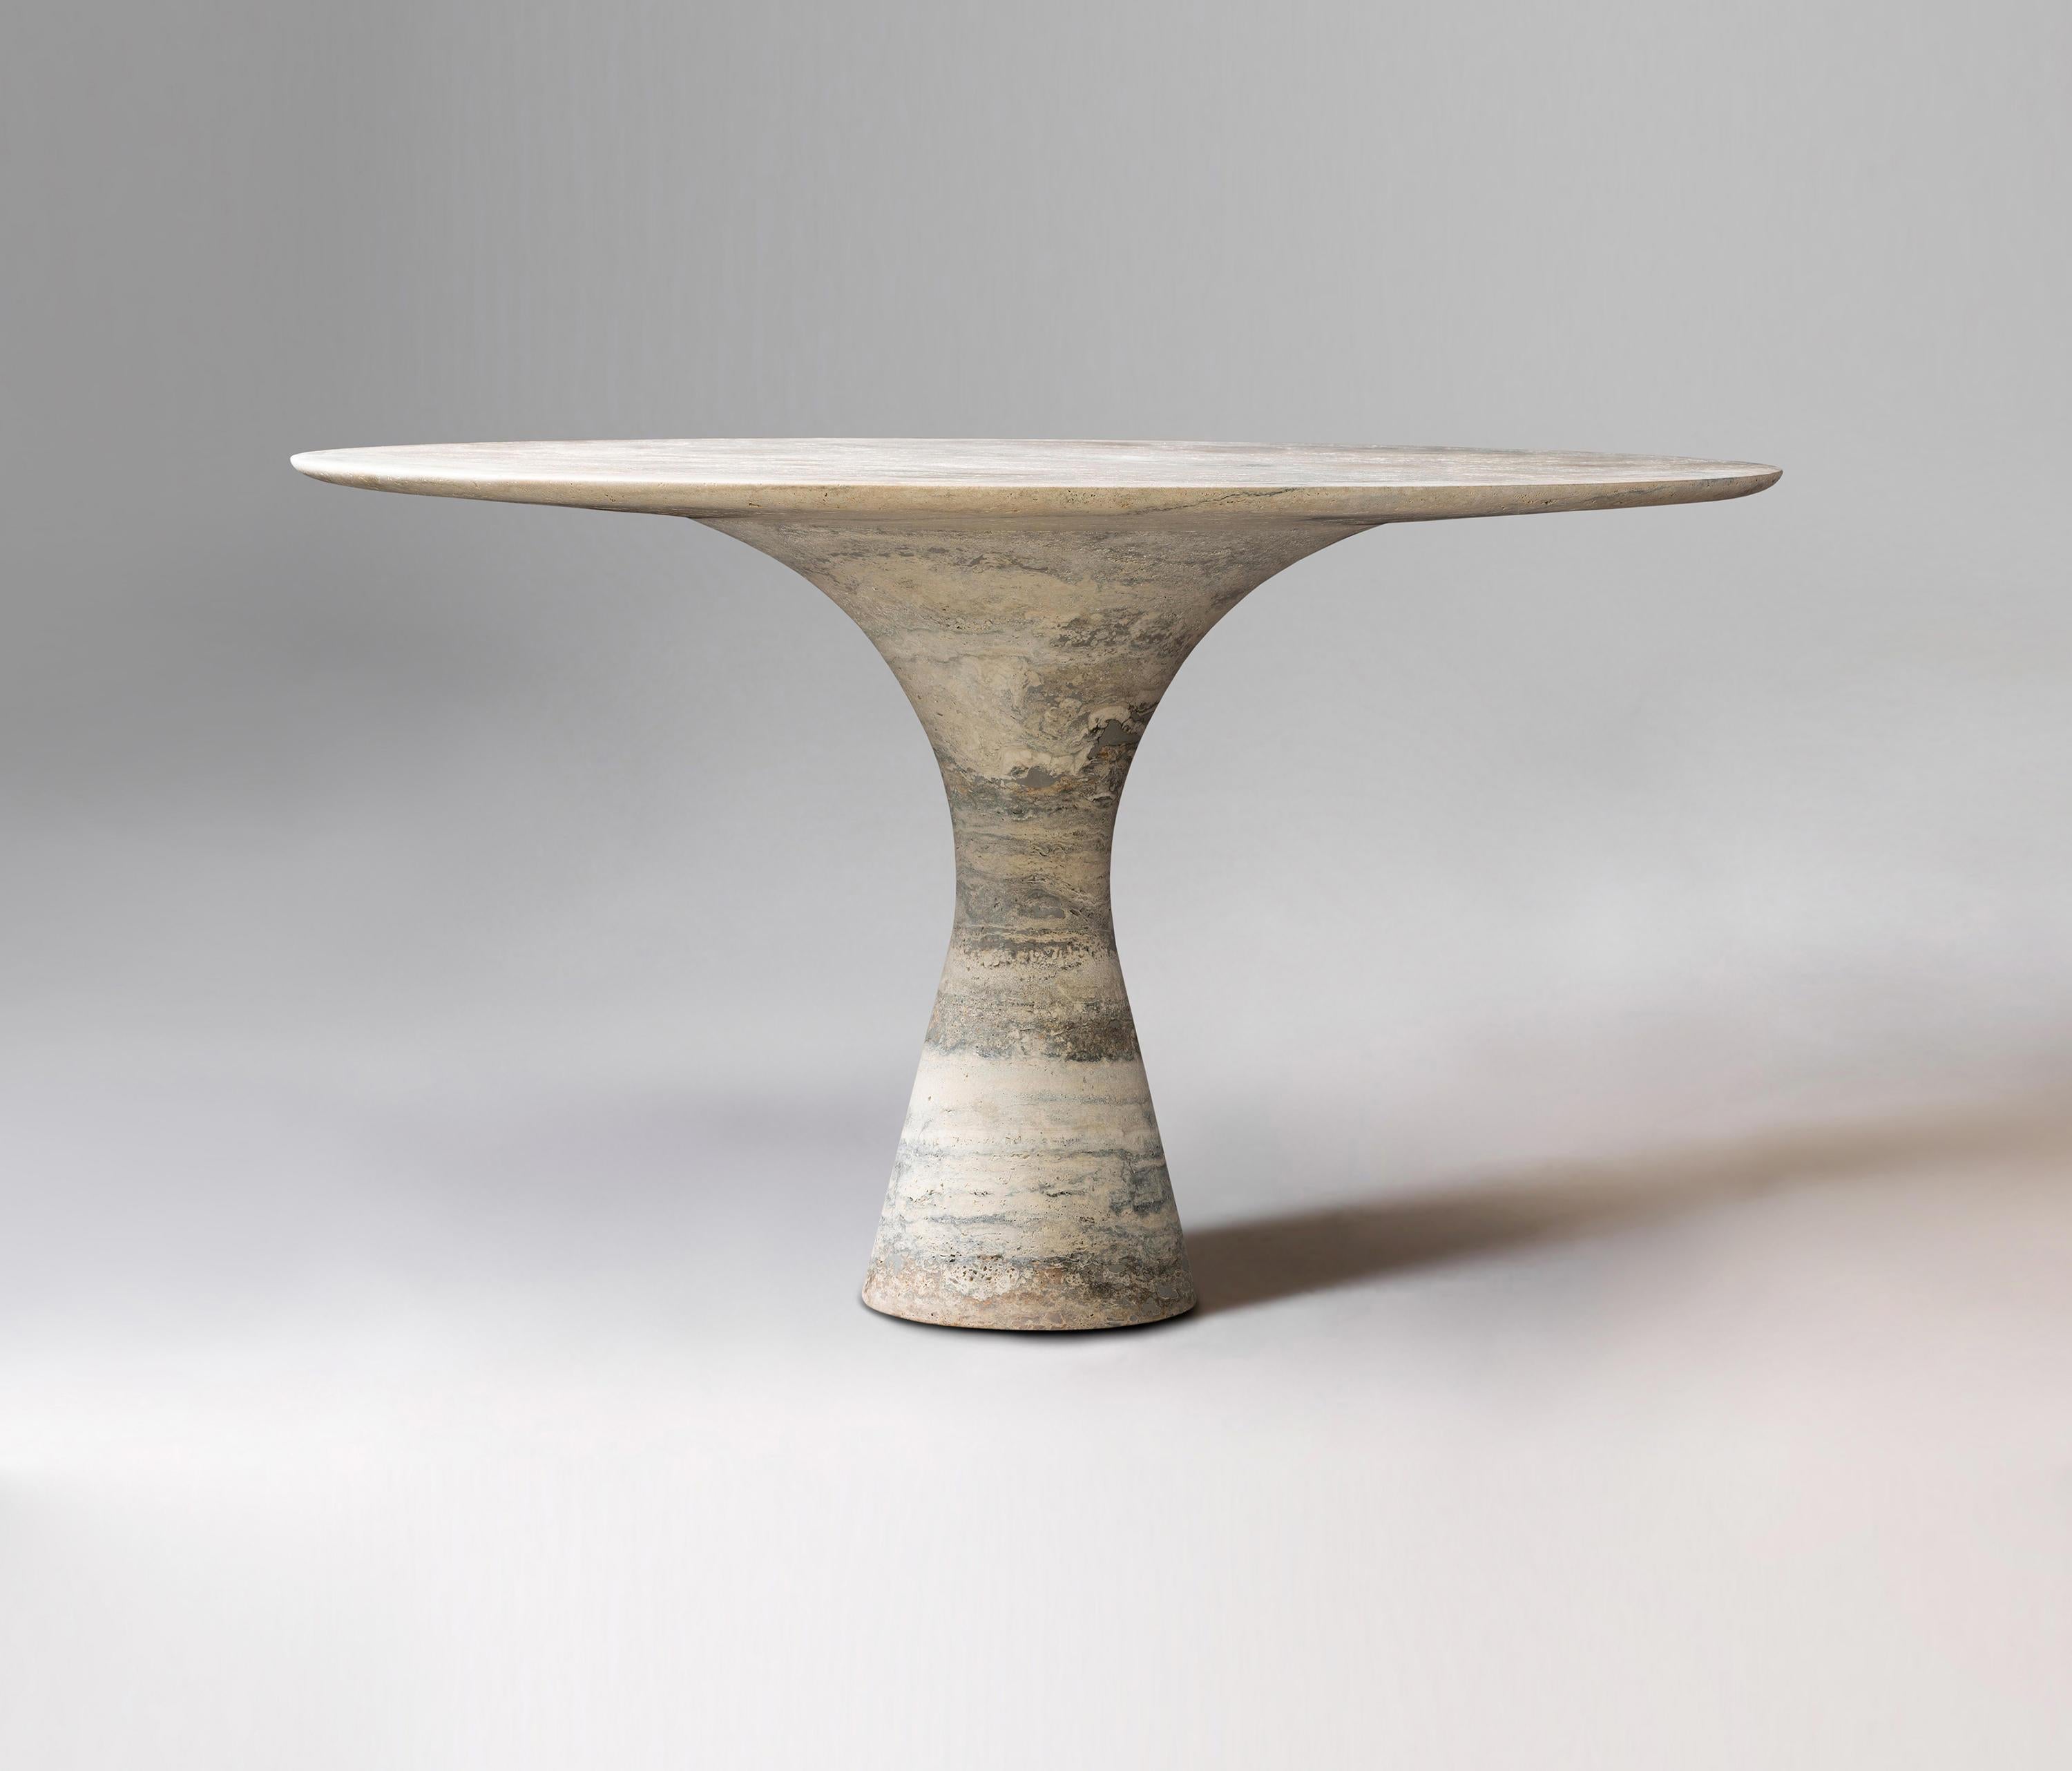 Table de salle à manger contemporaine en marbre Travertino Silver Refined 130/75
Dimensions : 130 x 75 cm : 130 x 75 cm
MATERIAL : Argent Travertino 

Angelo est l'essence même d'une table ronde en pierre naturelle, une forme sculpturale dans un